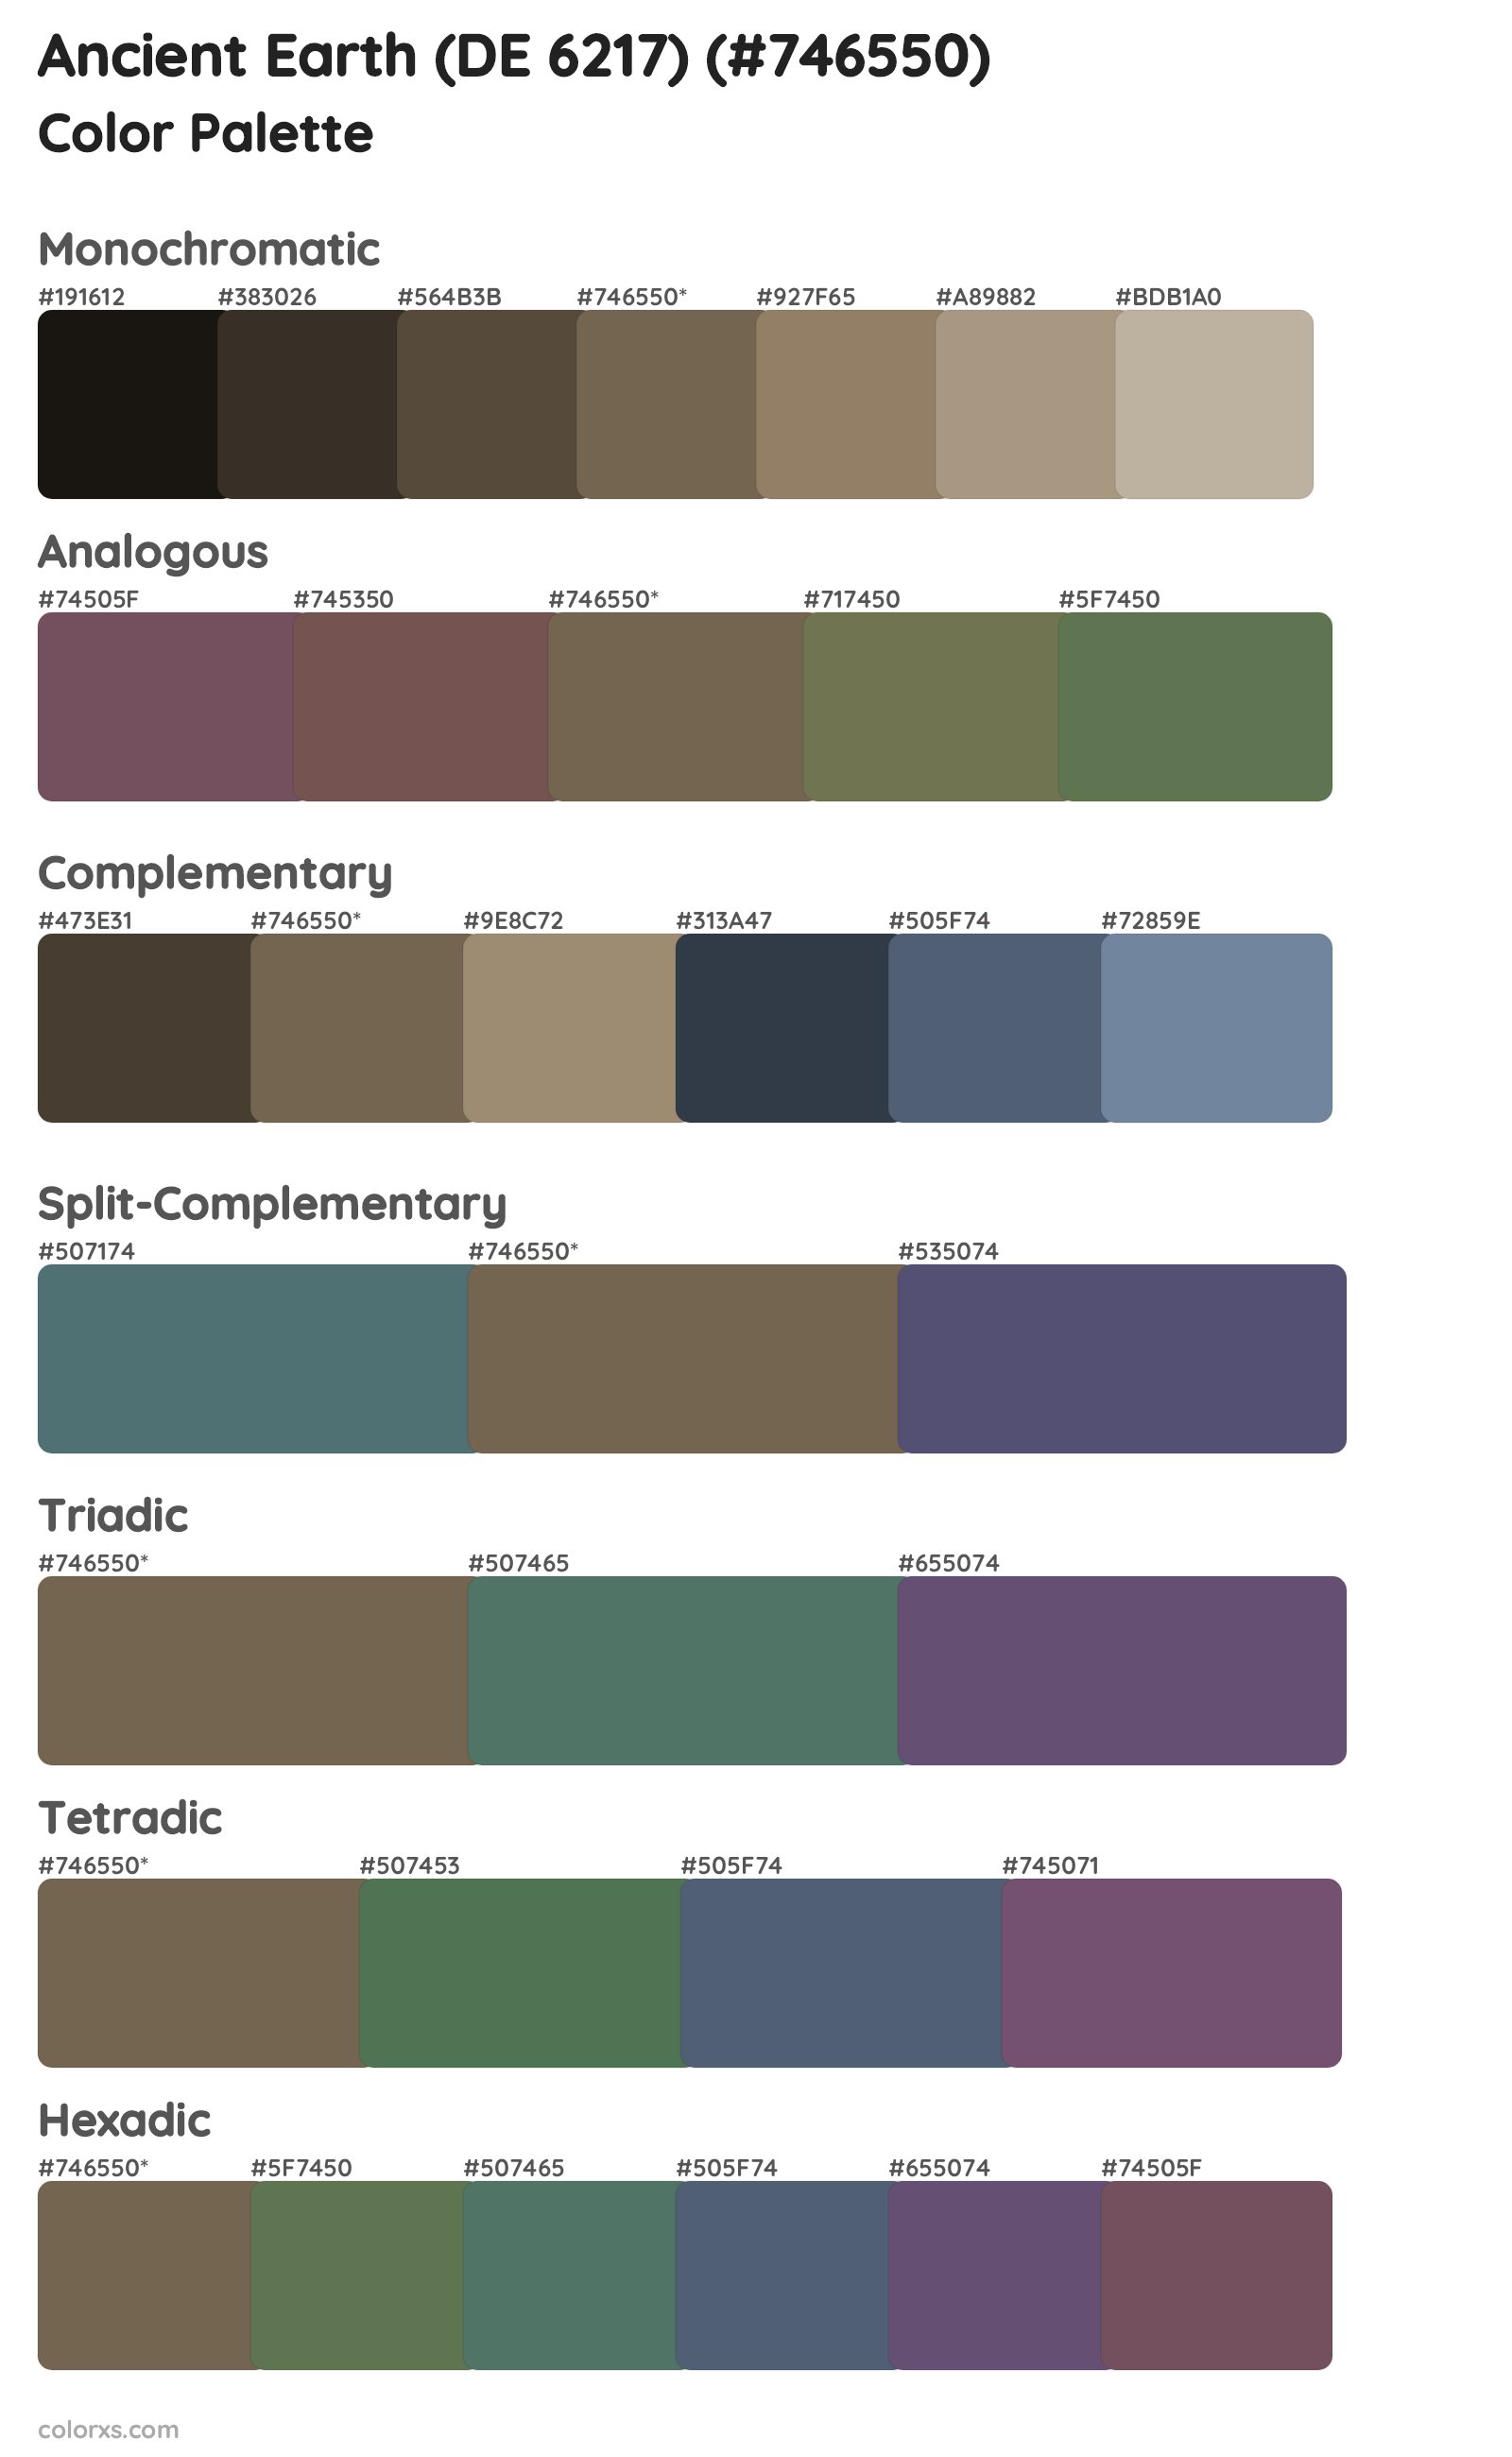 Ancient Earth (DE 6217) Color Scheme Palettes